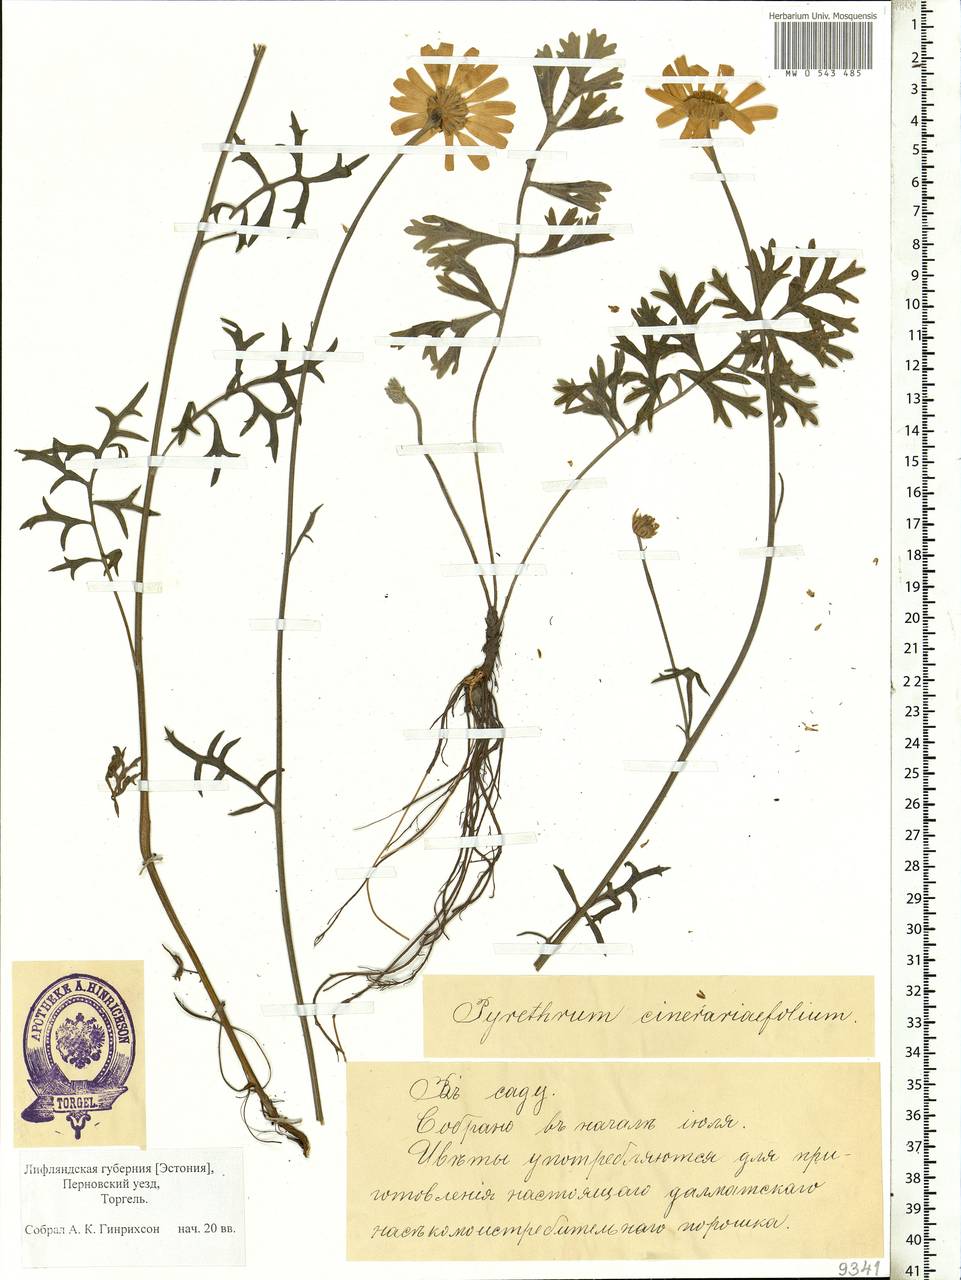 Tanacetum corymbosum subsp. corymbosum, Eastern Europe, Estonia (E2c) (Estonia)